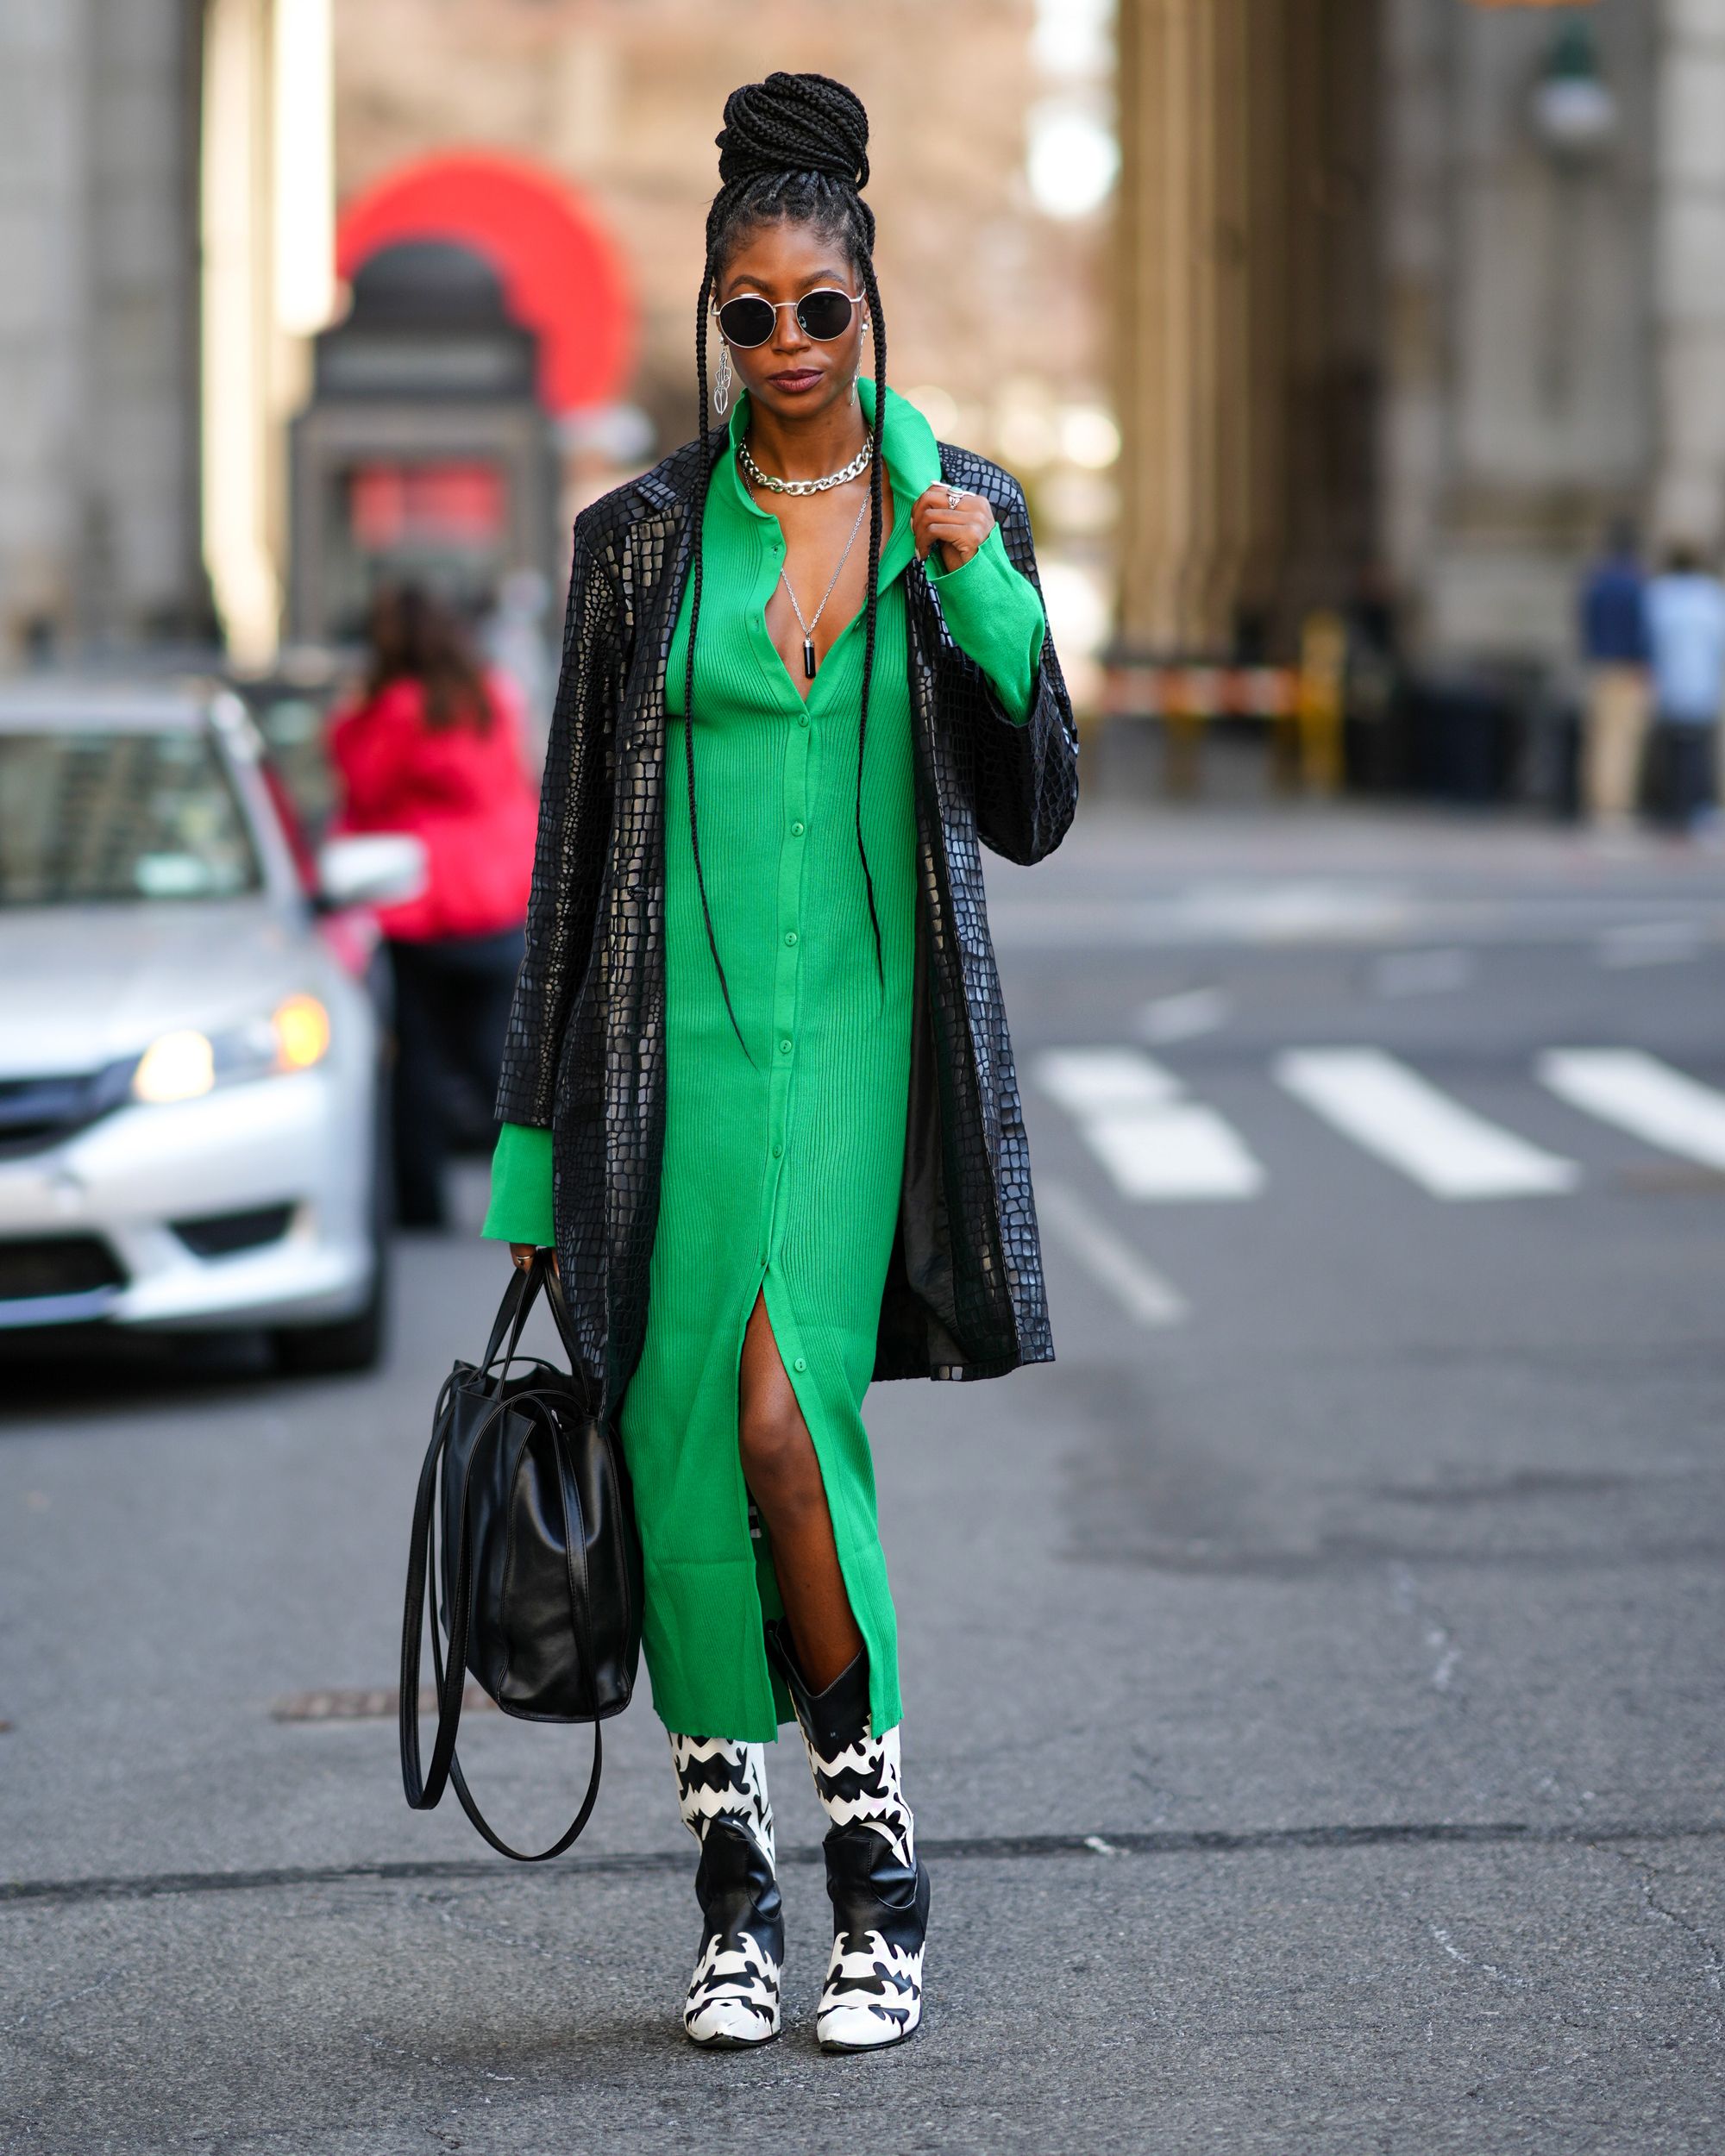 Emerald Green Infinity Dress - Long Emerald Green Convertible Dress